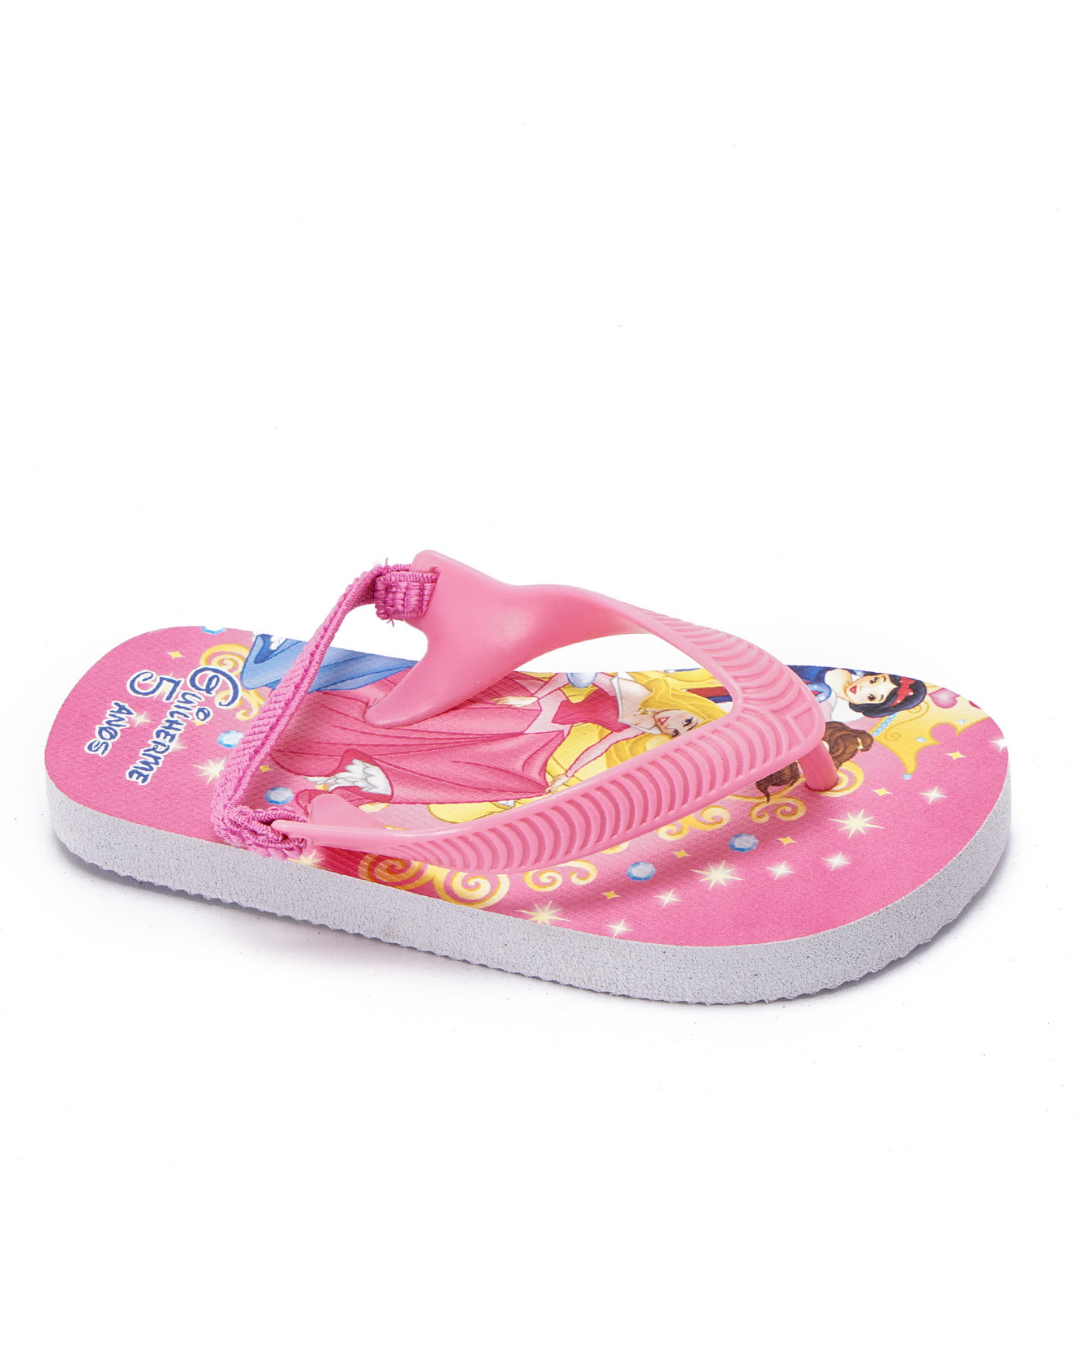 princesses slipper for my children